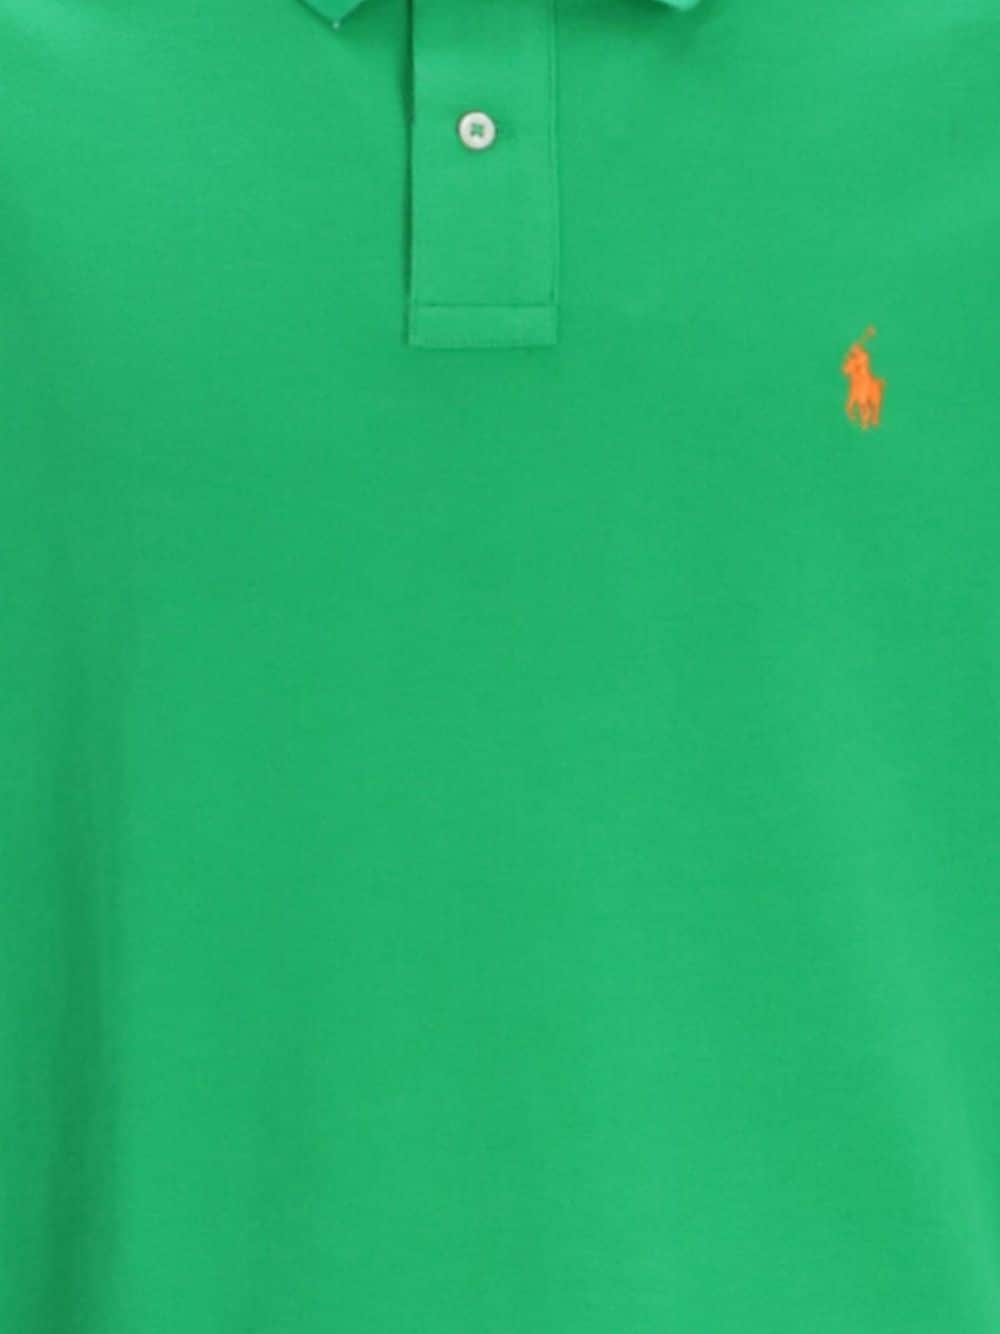 Polo Ralph Lauren Poloshirt met borduurwerk Groen